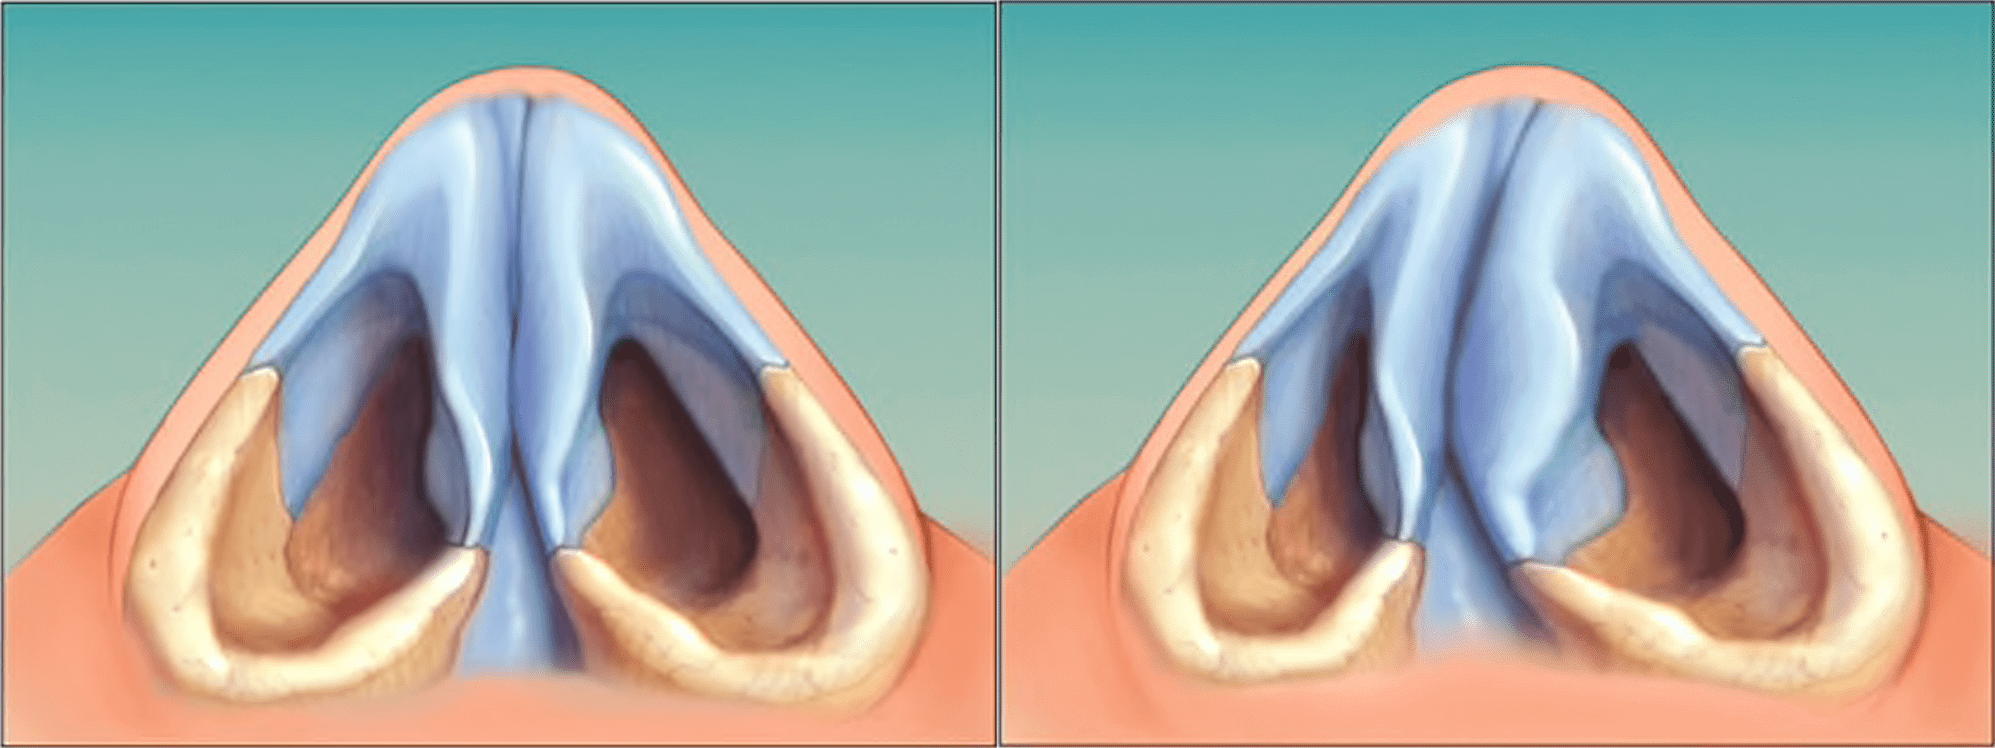 Дистопия носовой перегородки